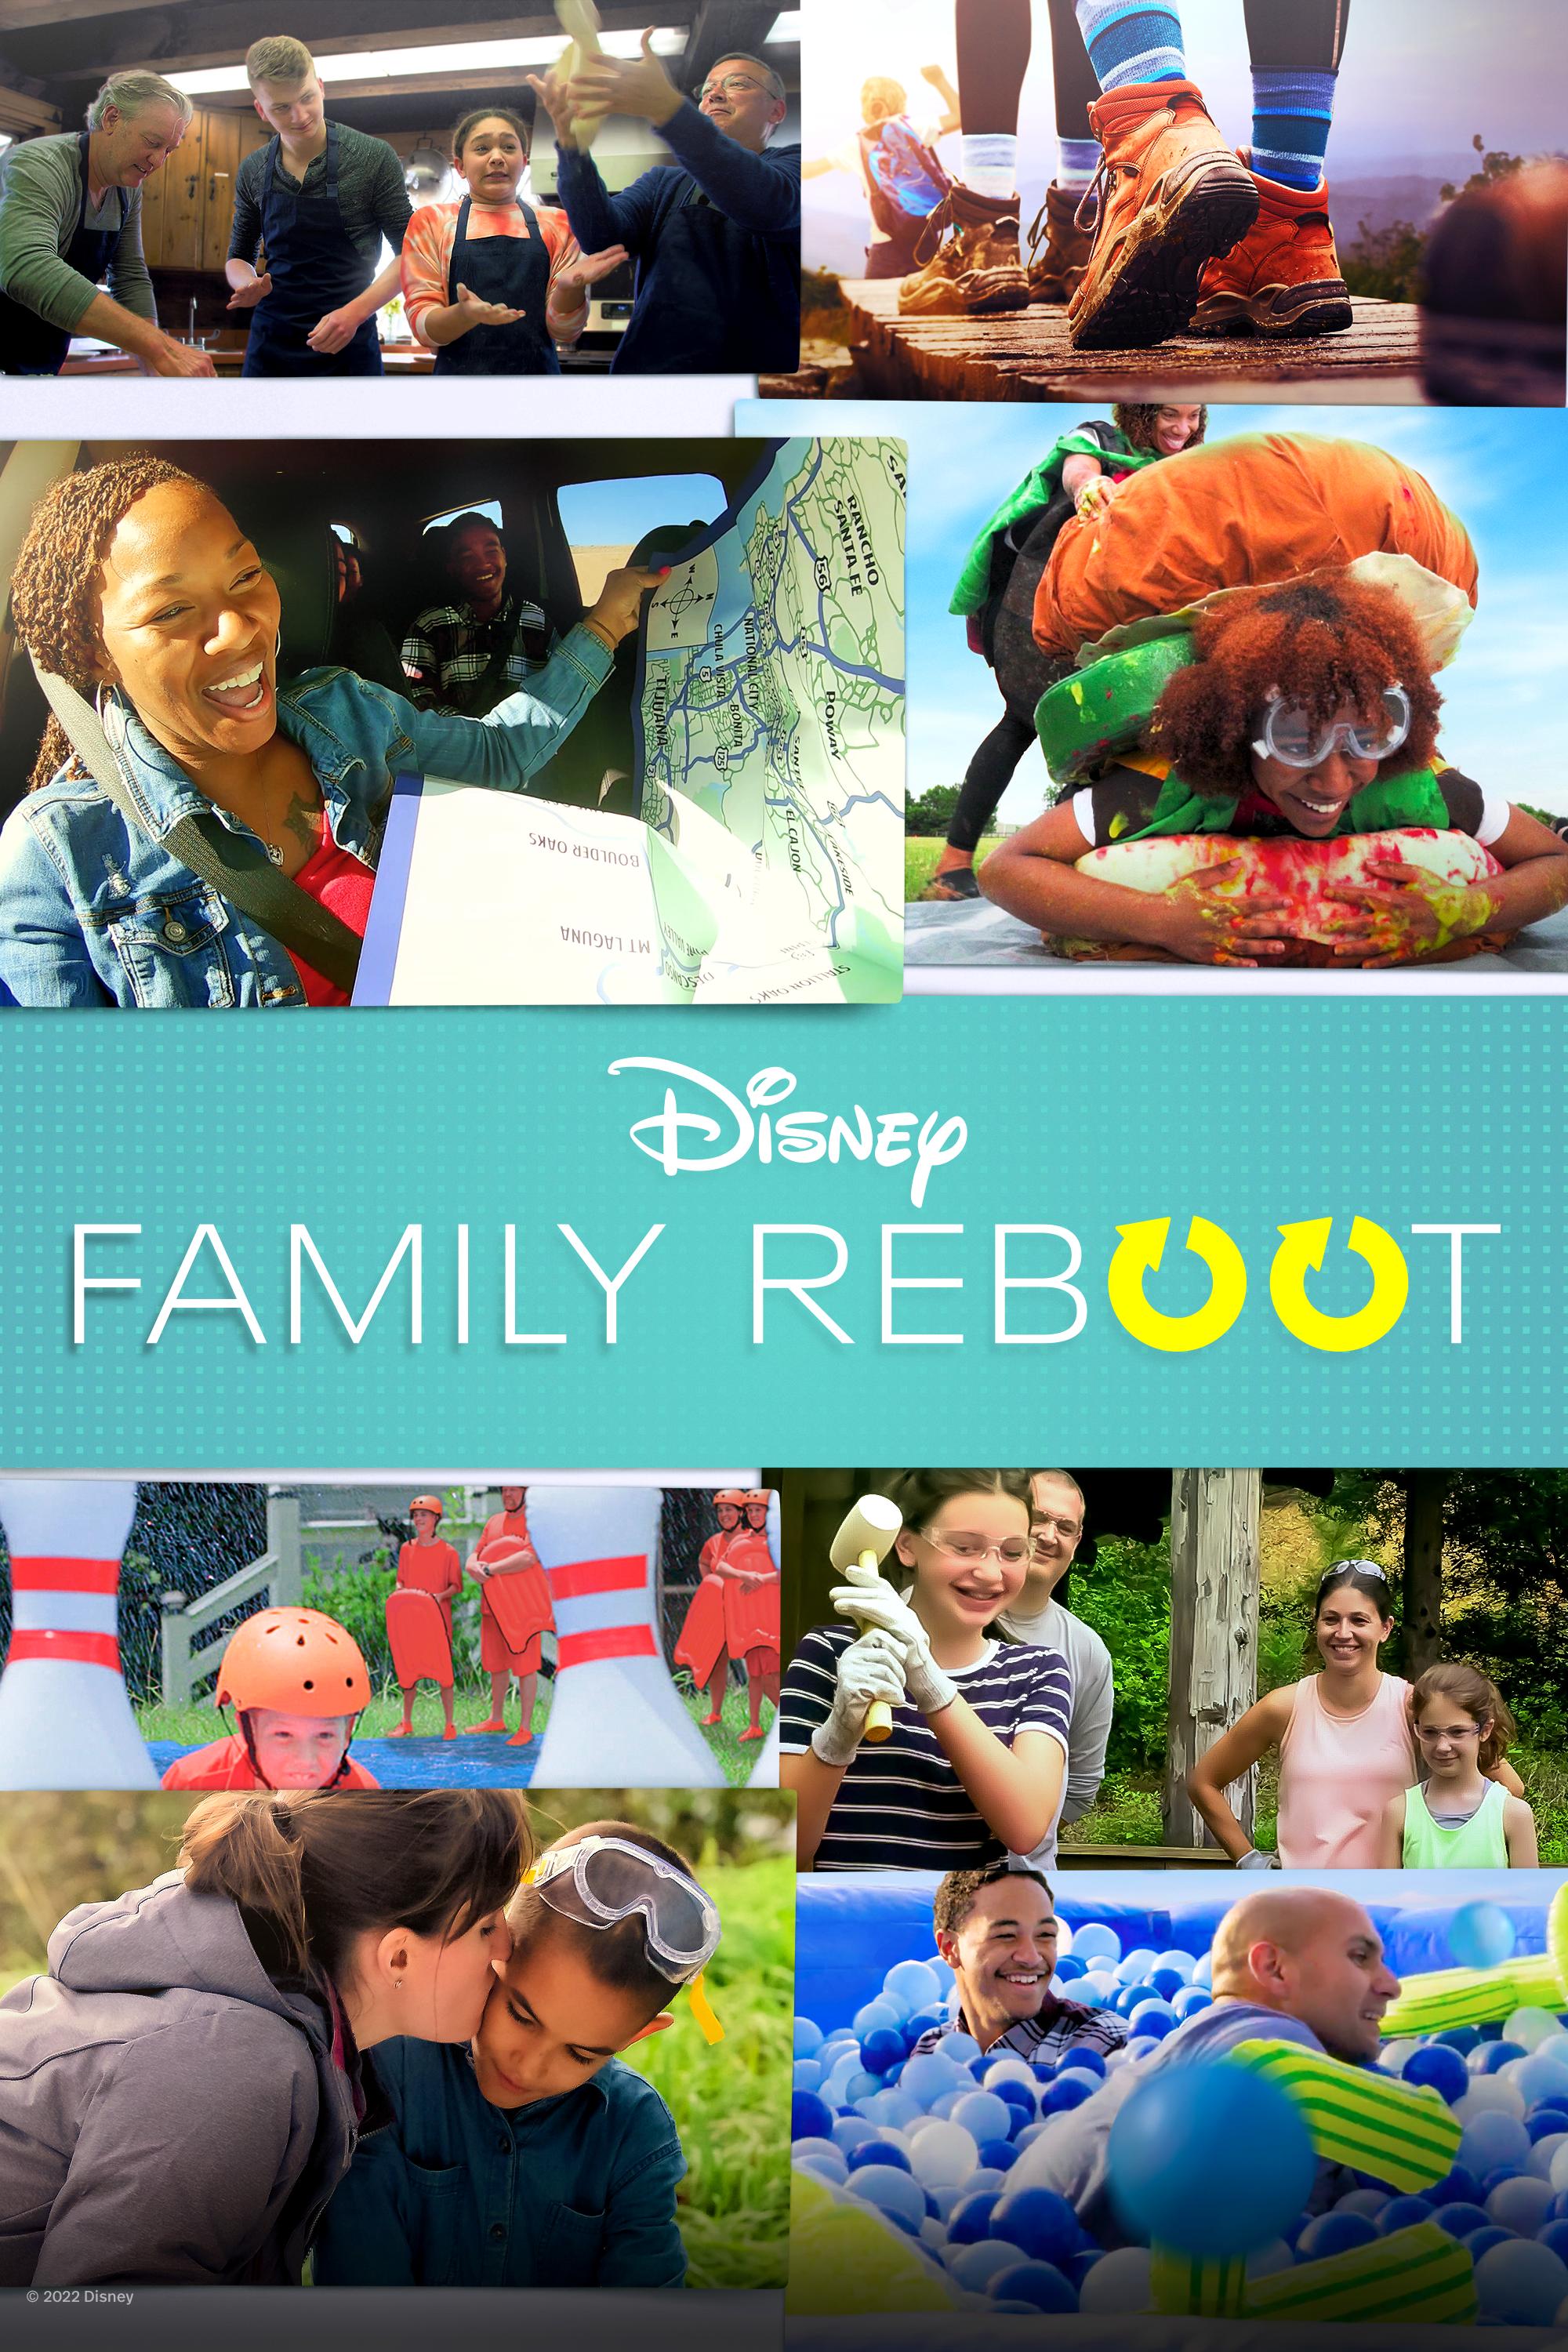 TV ratings for Family Reboot in Denmark. Disney+ TV series